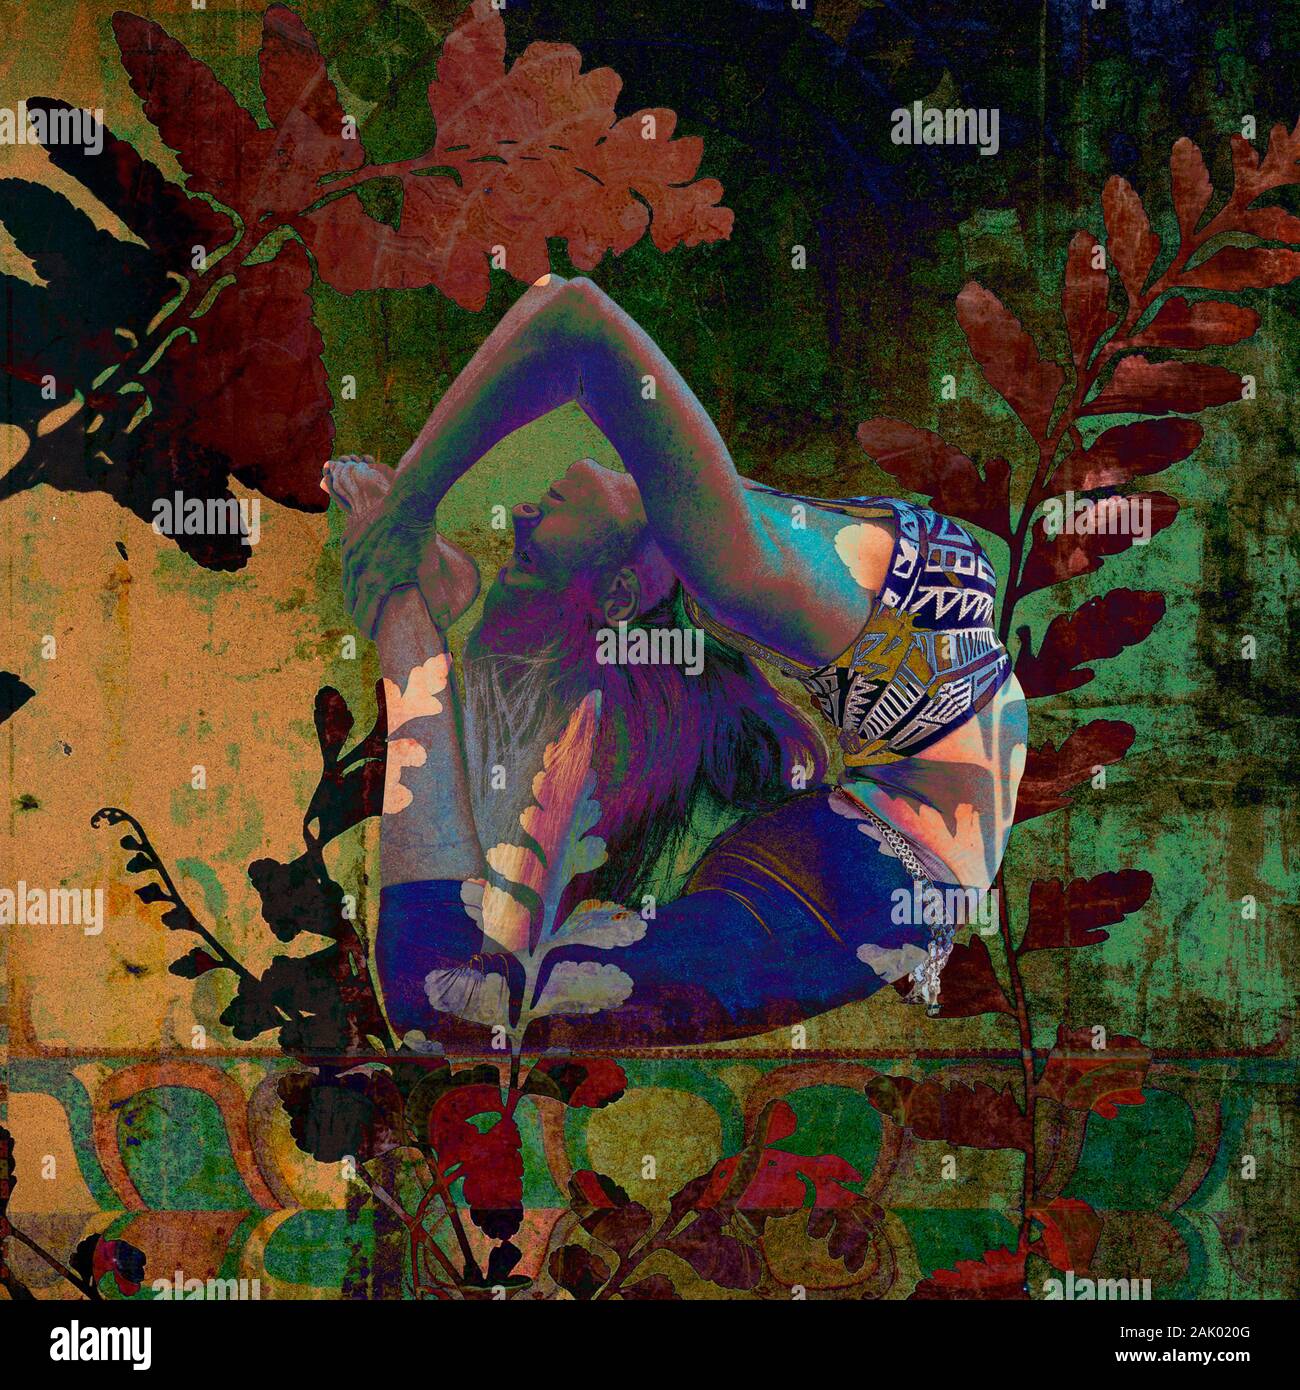 Femme dans l'illustration de la photo de fond profond avec des revêtements de plantes et de textures. Banque D'Images